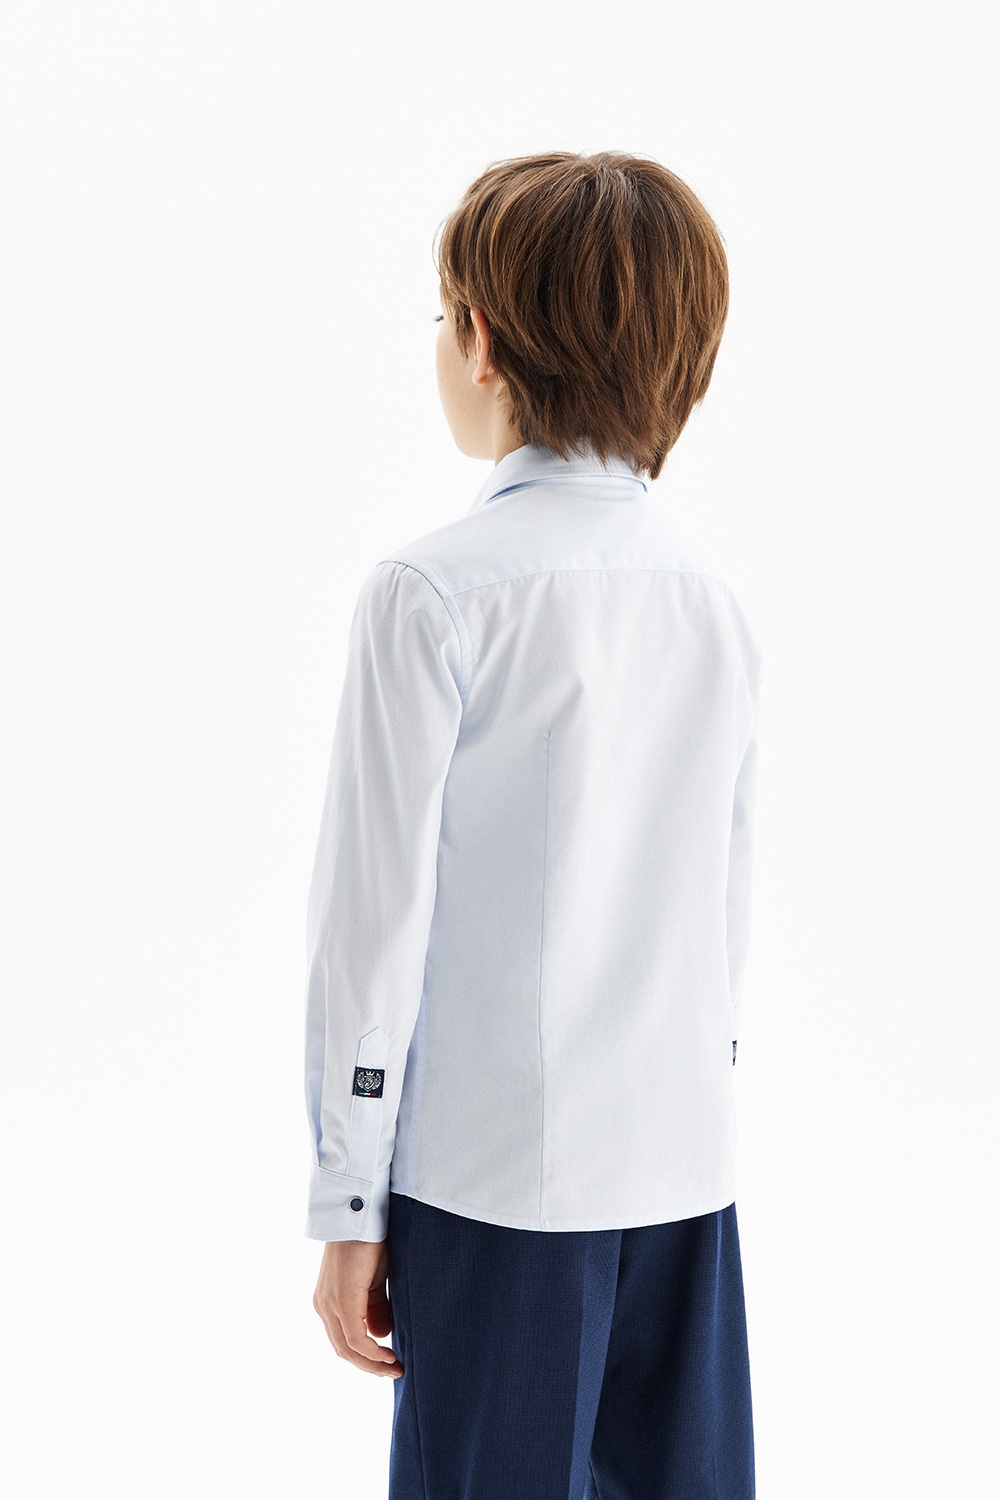 Хлопковая сорочка Slim на кнопках (SSFSB-229-18048-356) Silver Spoon